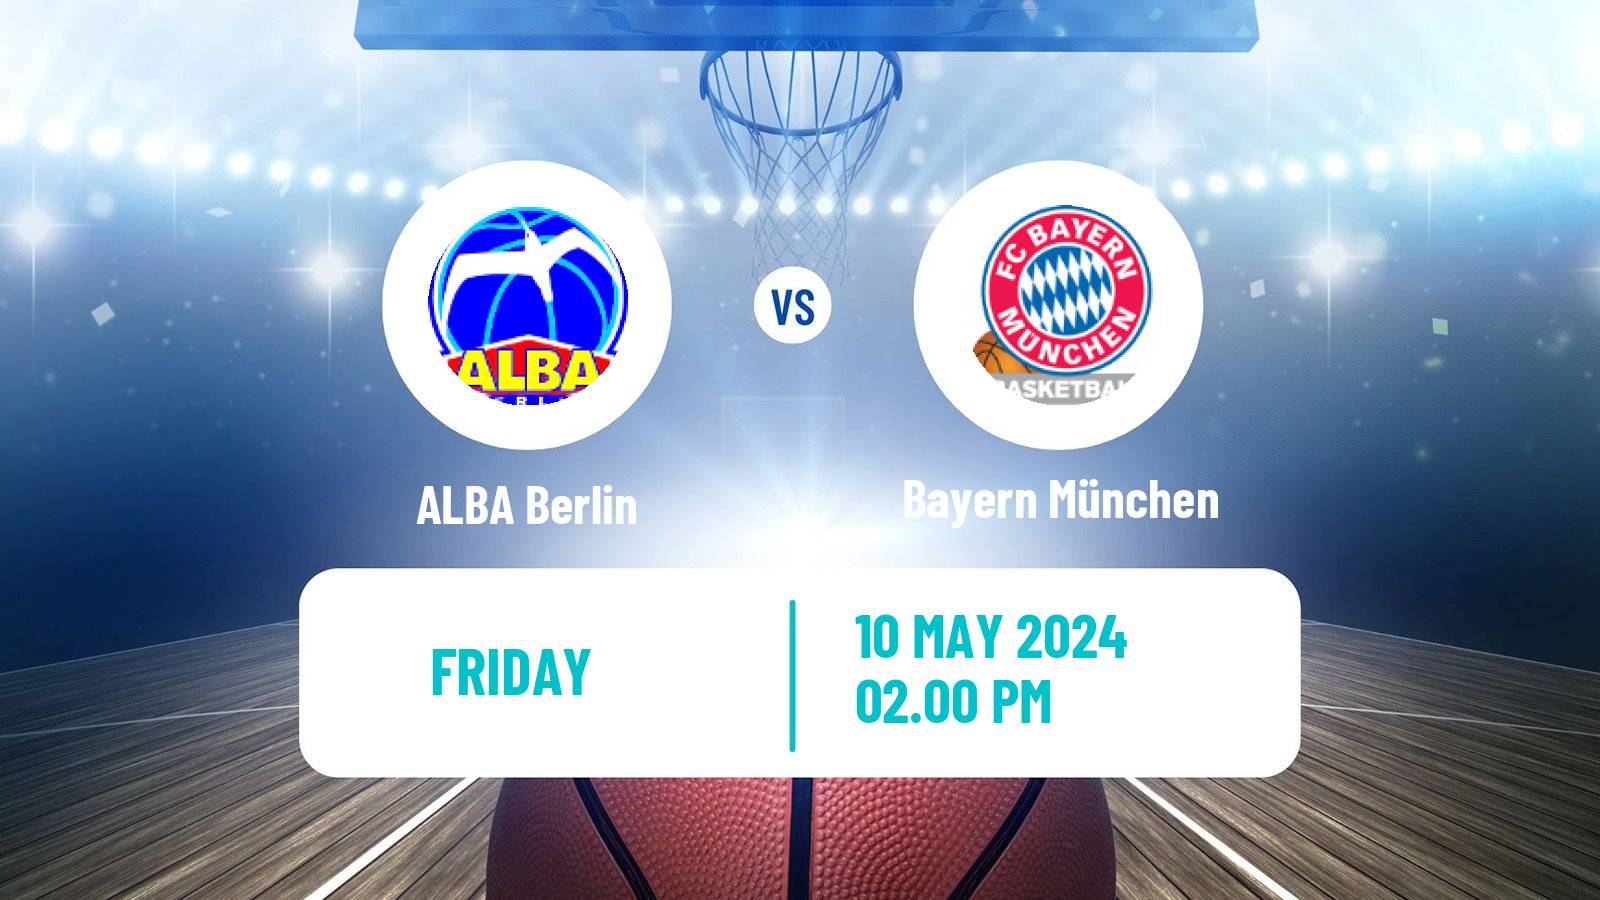 Basketball German BBL ALBA Berlin - Bayern München